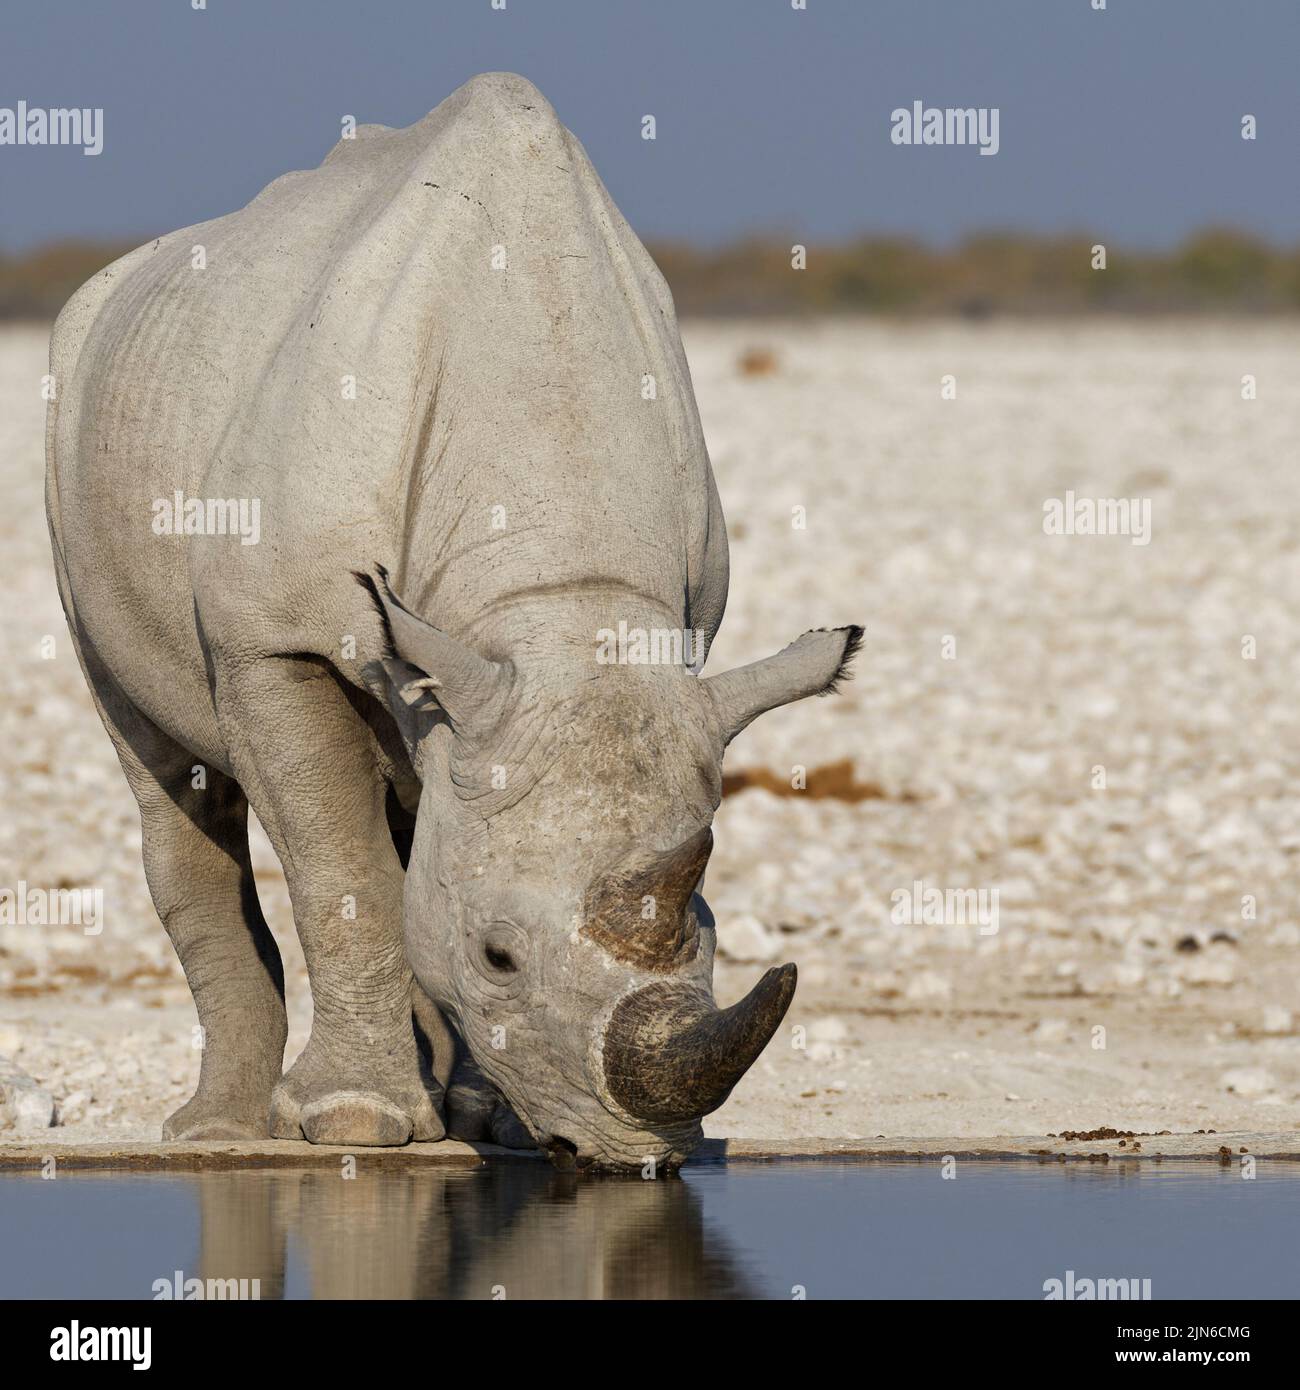 Black rhinoceros (Diceros bicornis), adult drinking at waterhole, Etosha National Park, Namibia, Africa Stock Photo